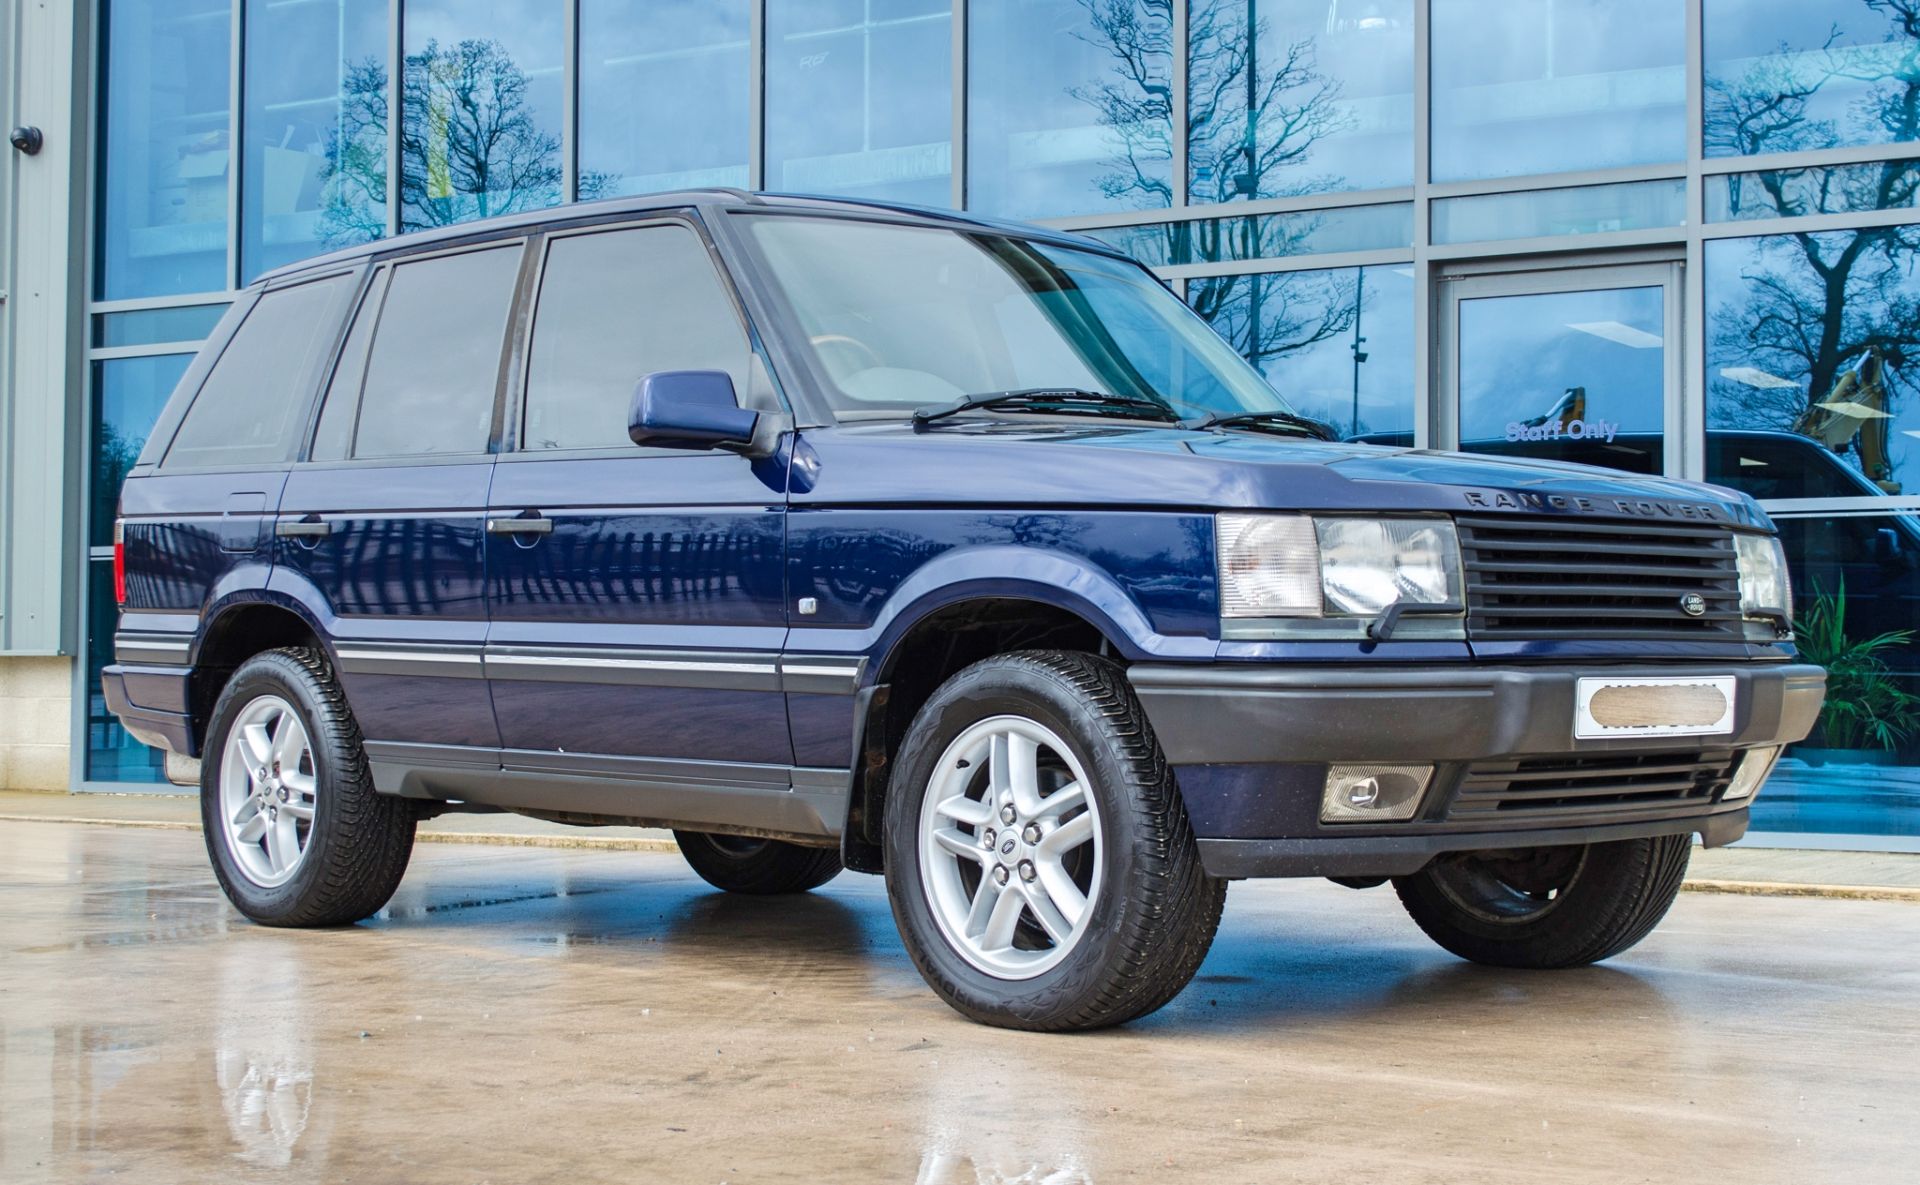 2001 Range Rover Vogue 4.6 litre V8 Auto 4 door SUV estate Registration: Y498 HNP Chassis: - Image 3 of 65